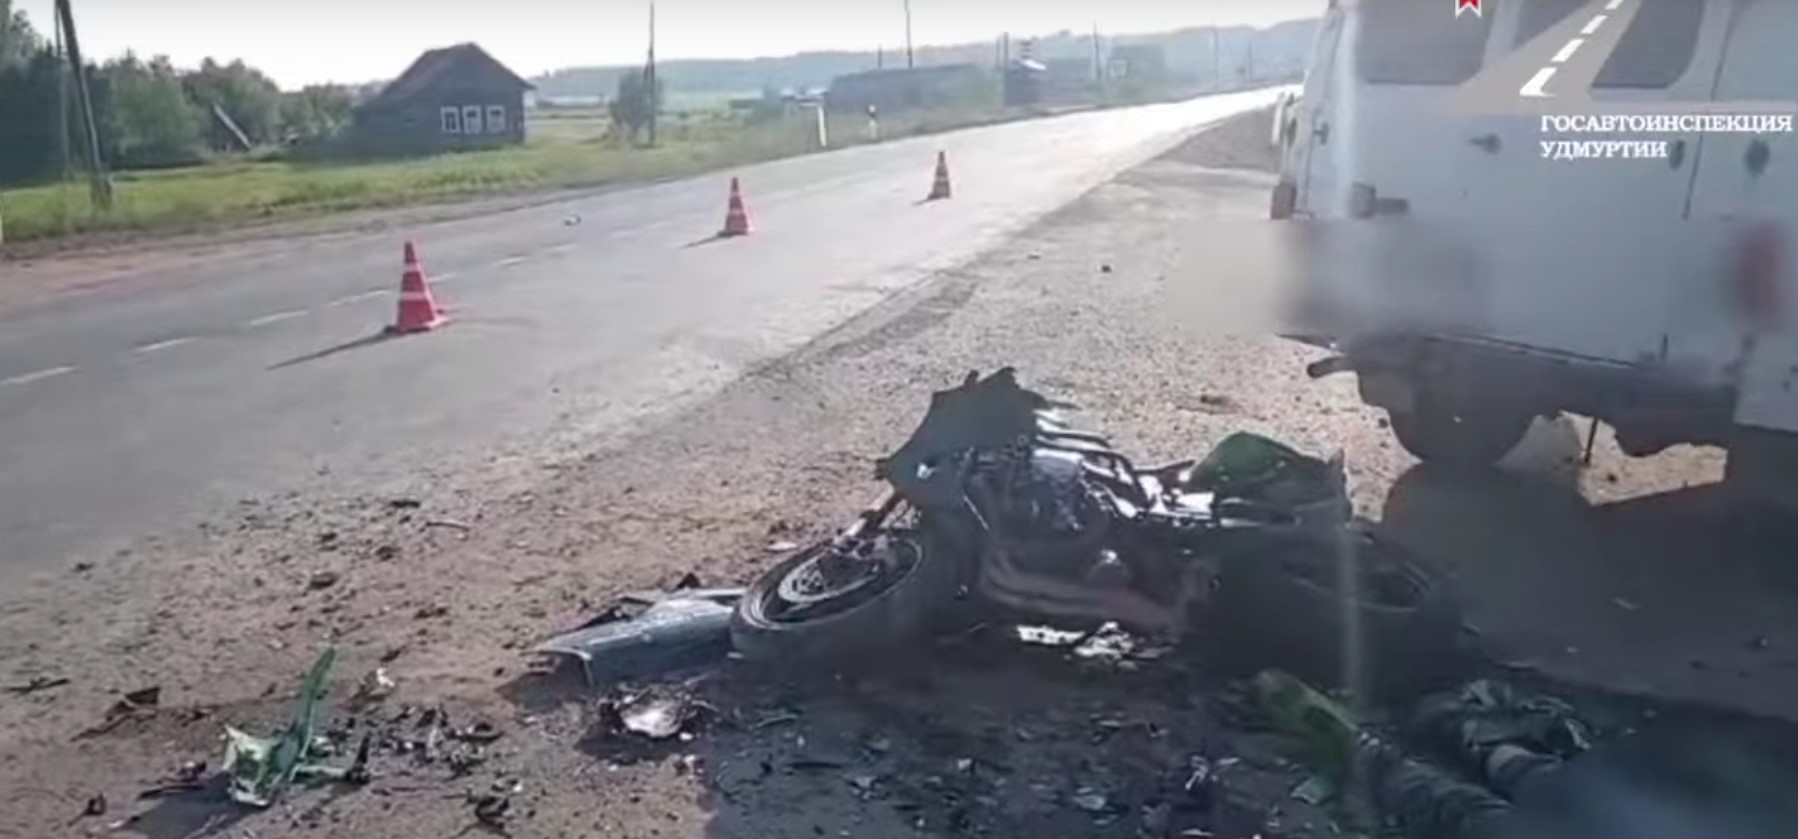 Мотоциклист погиб в ДТП в Сюмсинском районе Удмуртии